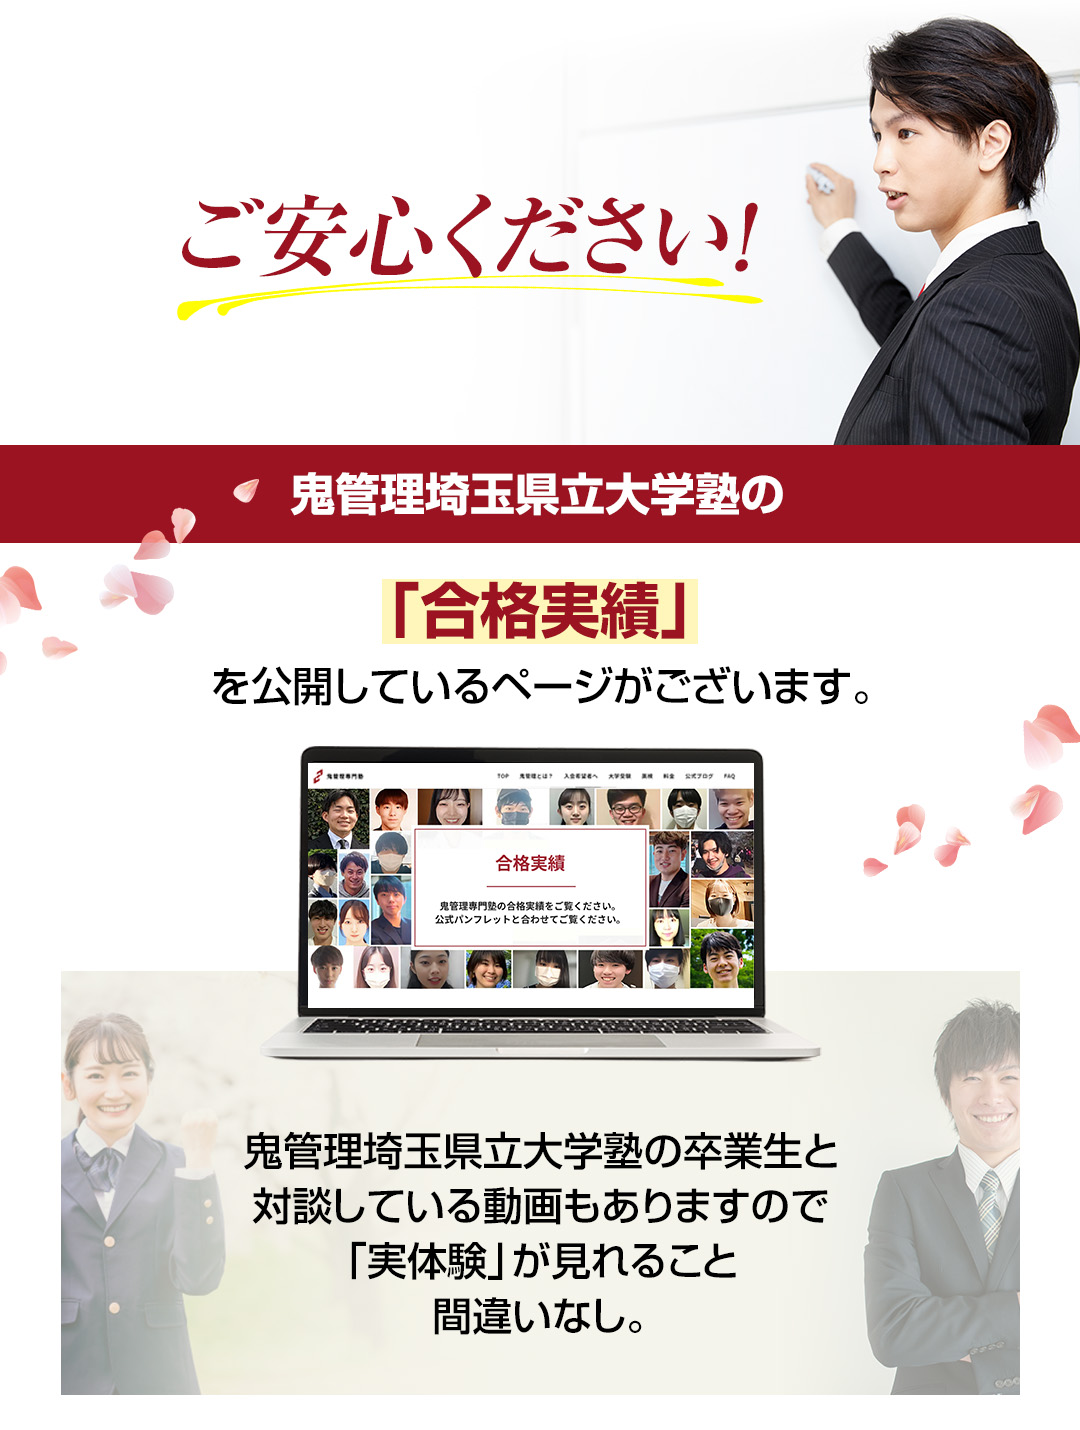 鬼管理埼玉県立大学塾の「合格実績」を公開しているページがございます